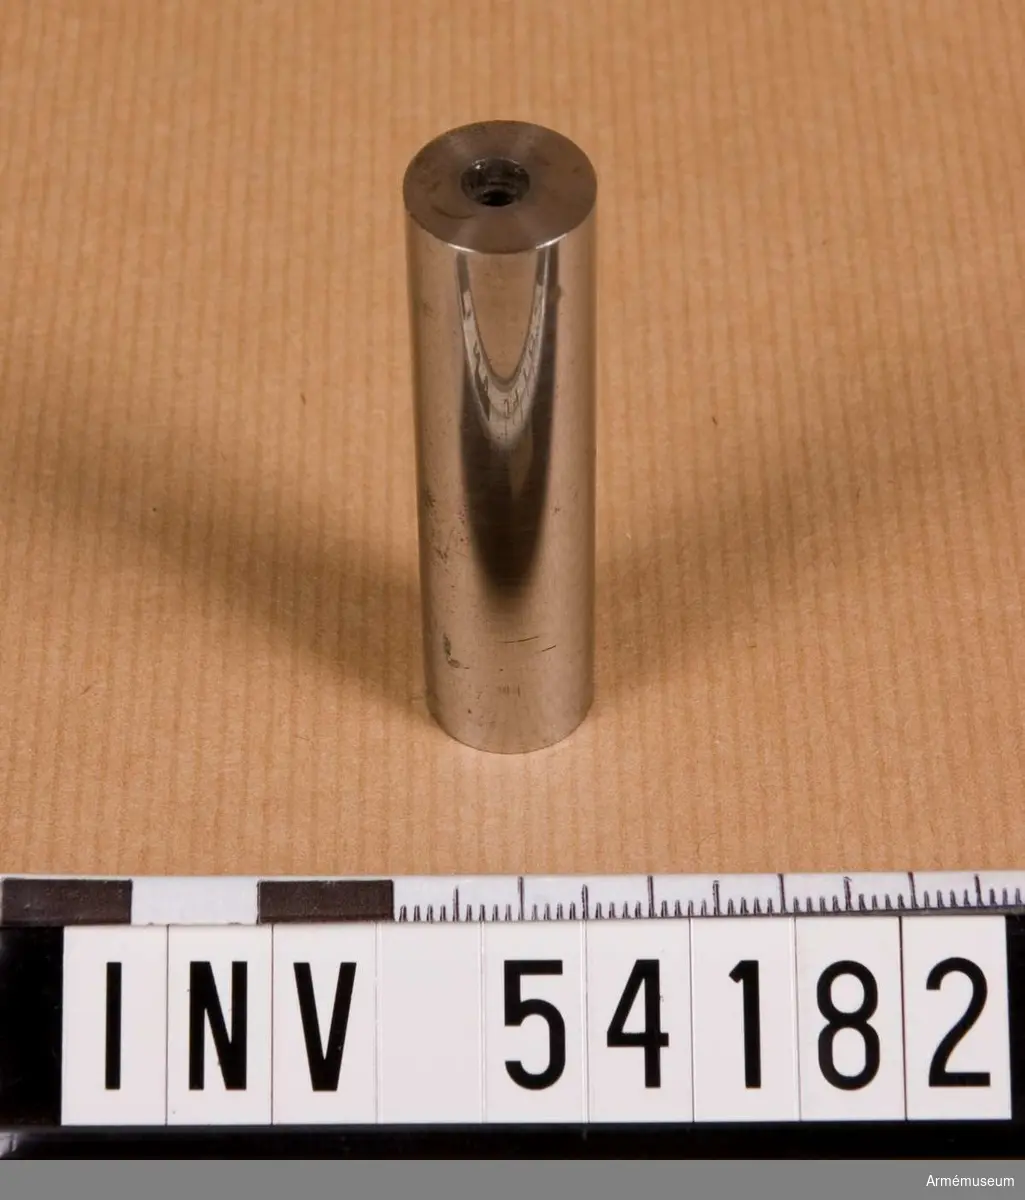 Grupp E VIII.
0,49 mm.
Ingår i en sats instrument för besiktning av studsare- och  flankörpistol m/1850. Satsen omfattar kalibertolkar, sadelbleck för kolv och pipa, brillor, skiva till  låsskruv, krypbleck för lås och andra delar och låda.